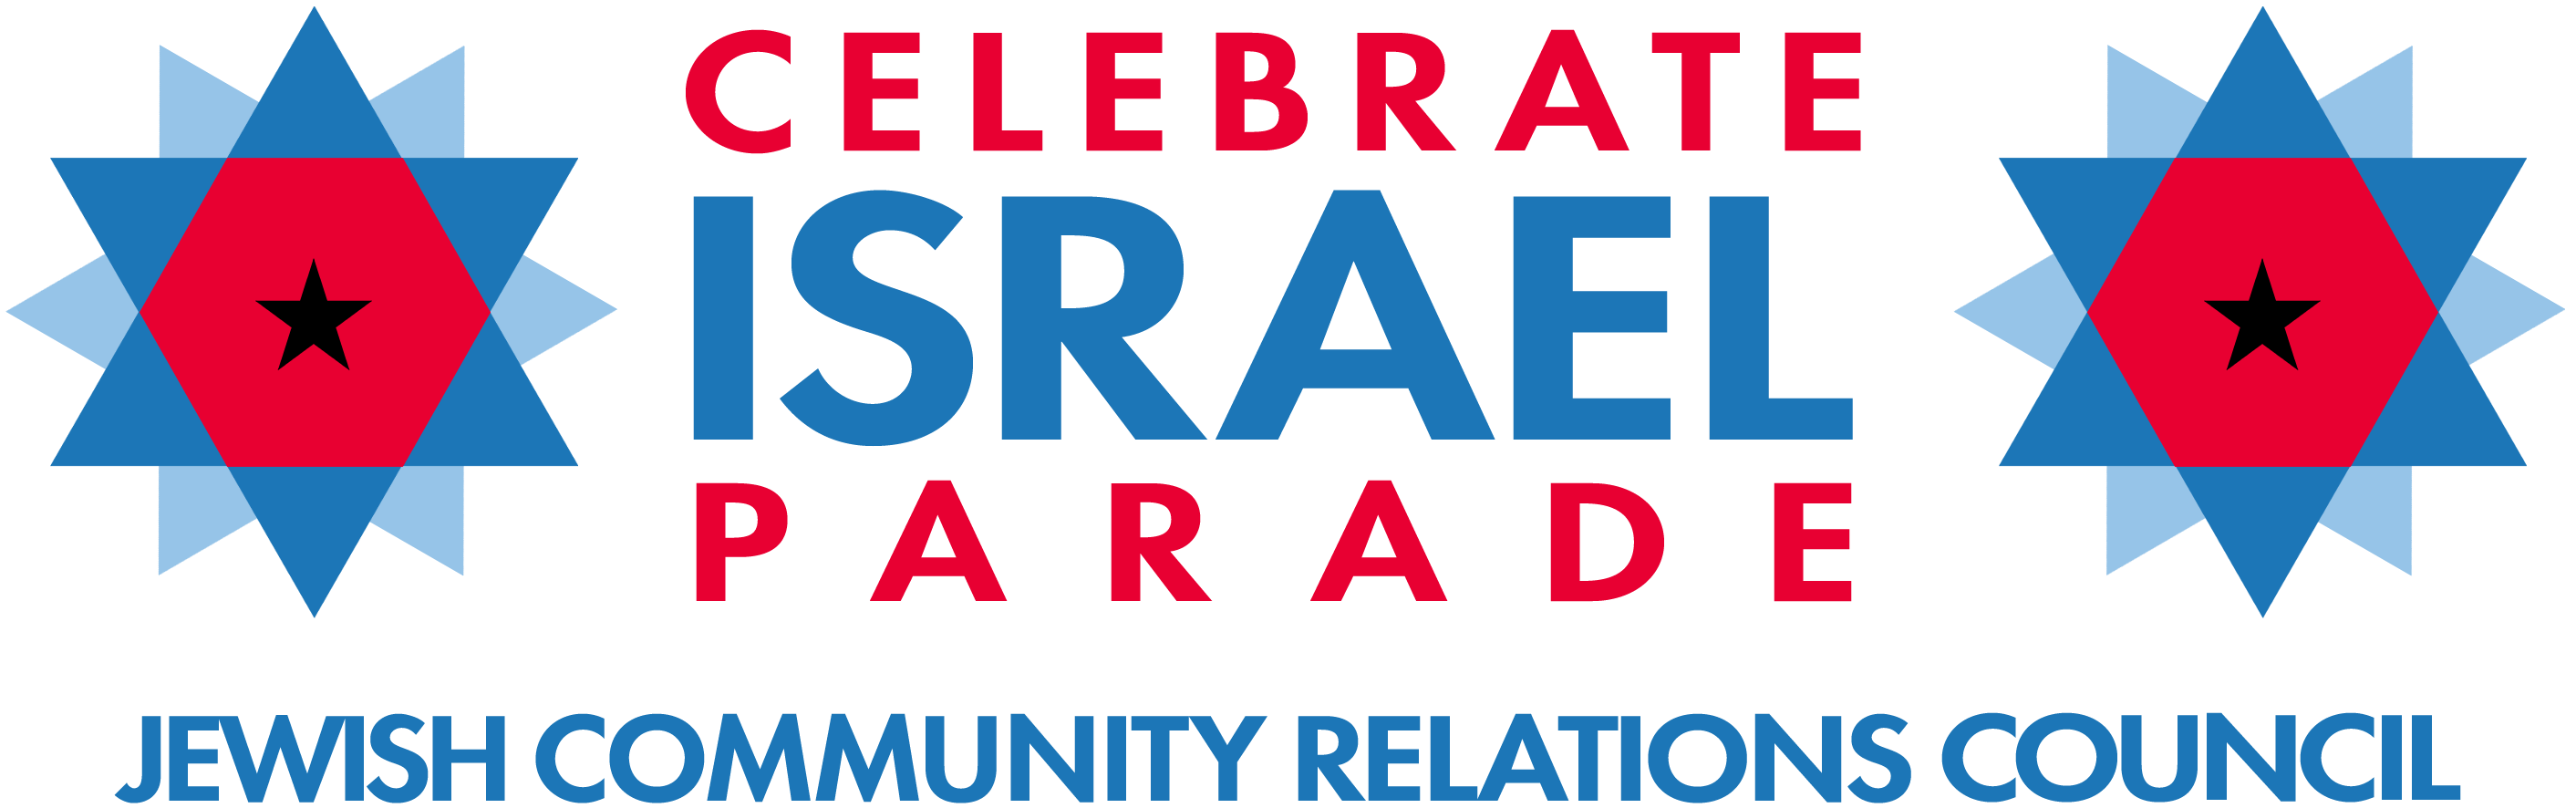 JCRC-NY Celebrate Israel Parade